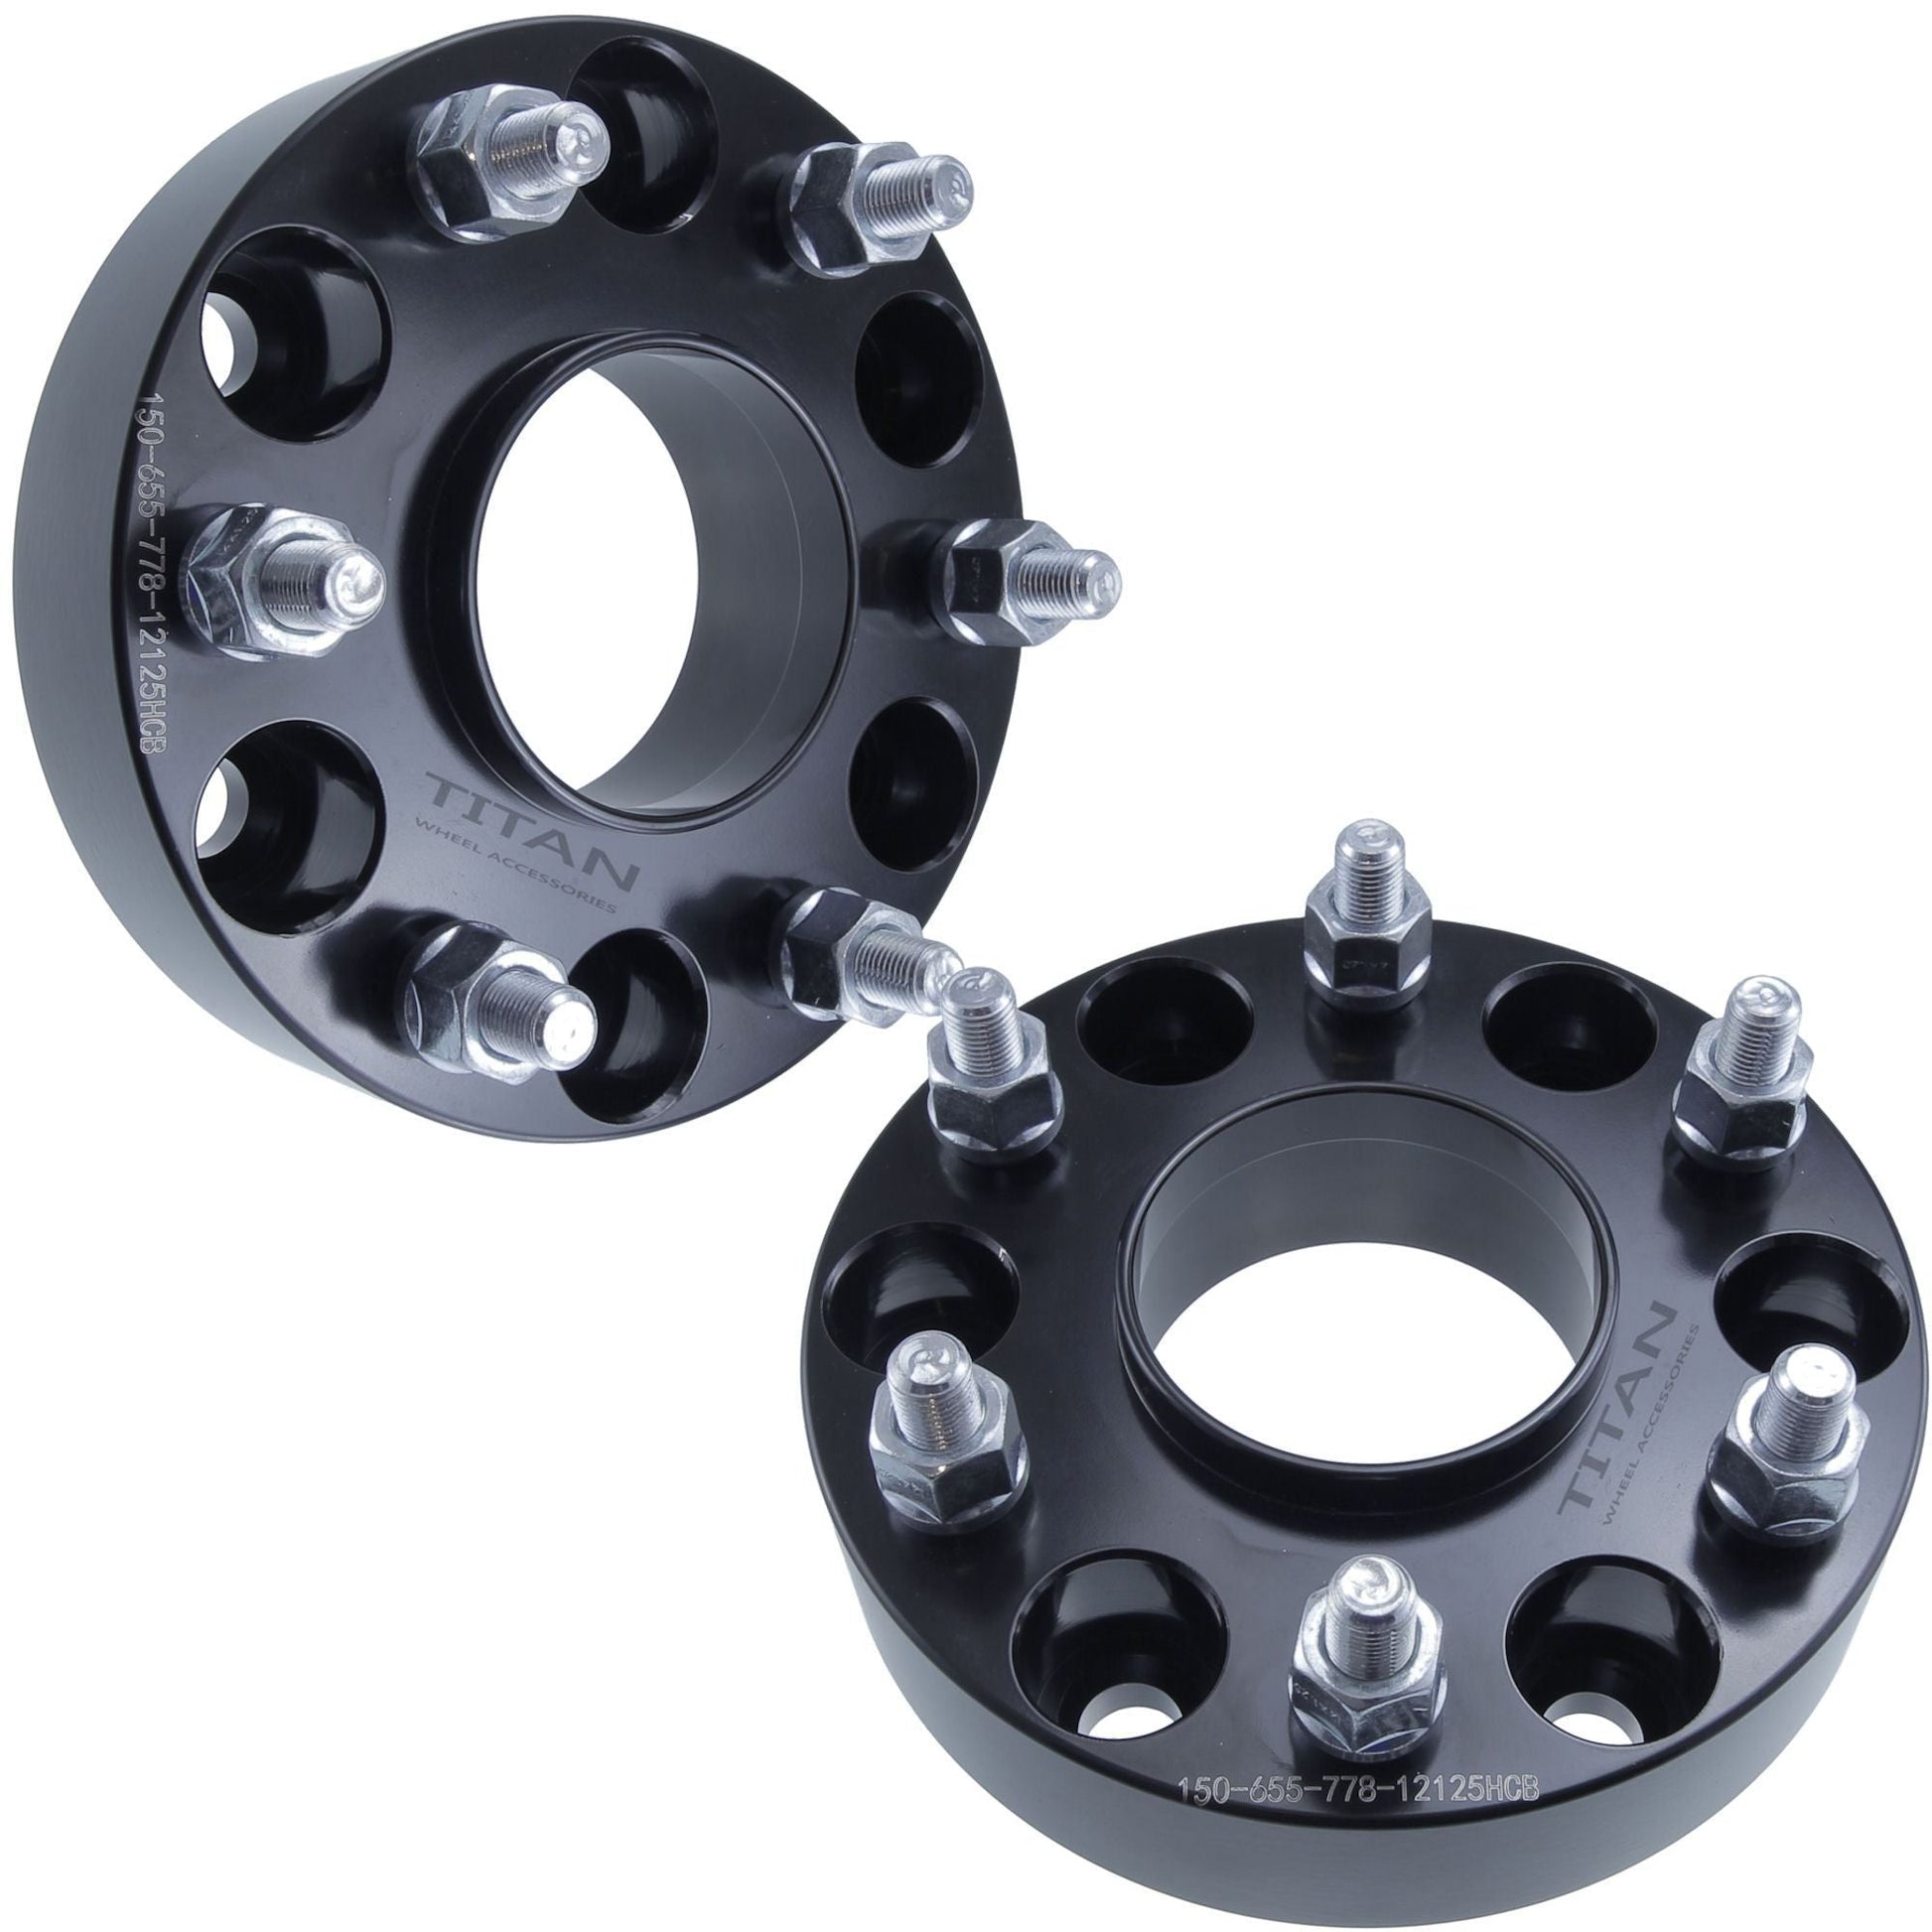 38mm (1.5") Titan Wheel Spacers for Infiniti QX56 Nissan Armada Titan | 6x5.5 (6x139.7) | 77.8 Hubcentric |12x1.25 Studs | Set of 4 | Titan Wheel Accessories